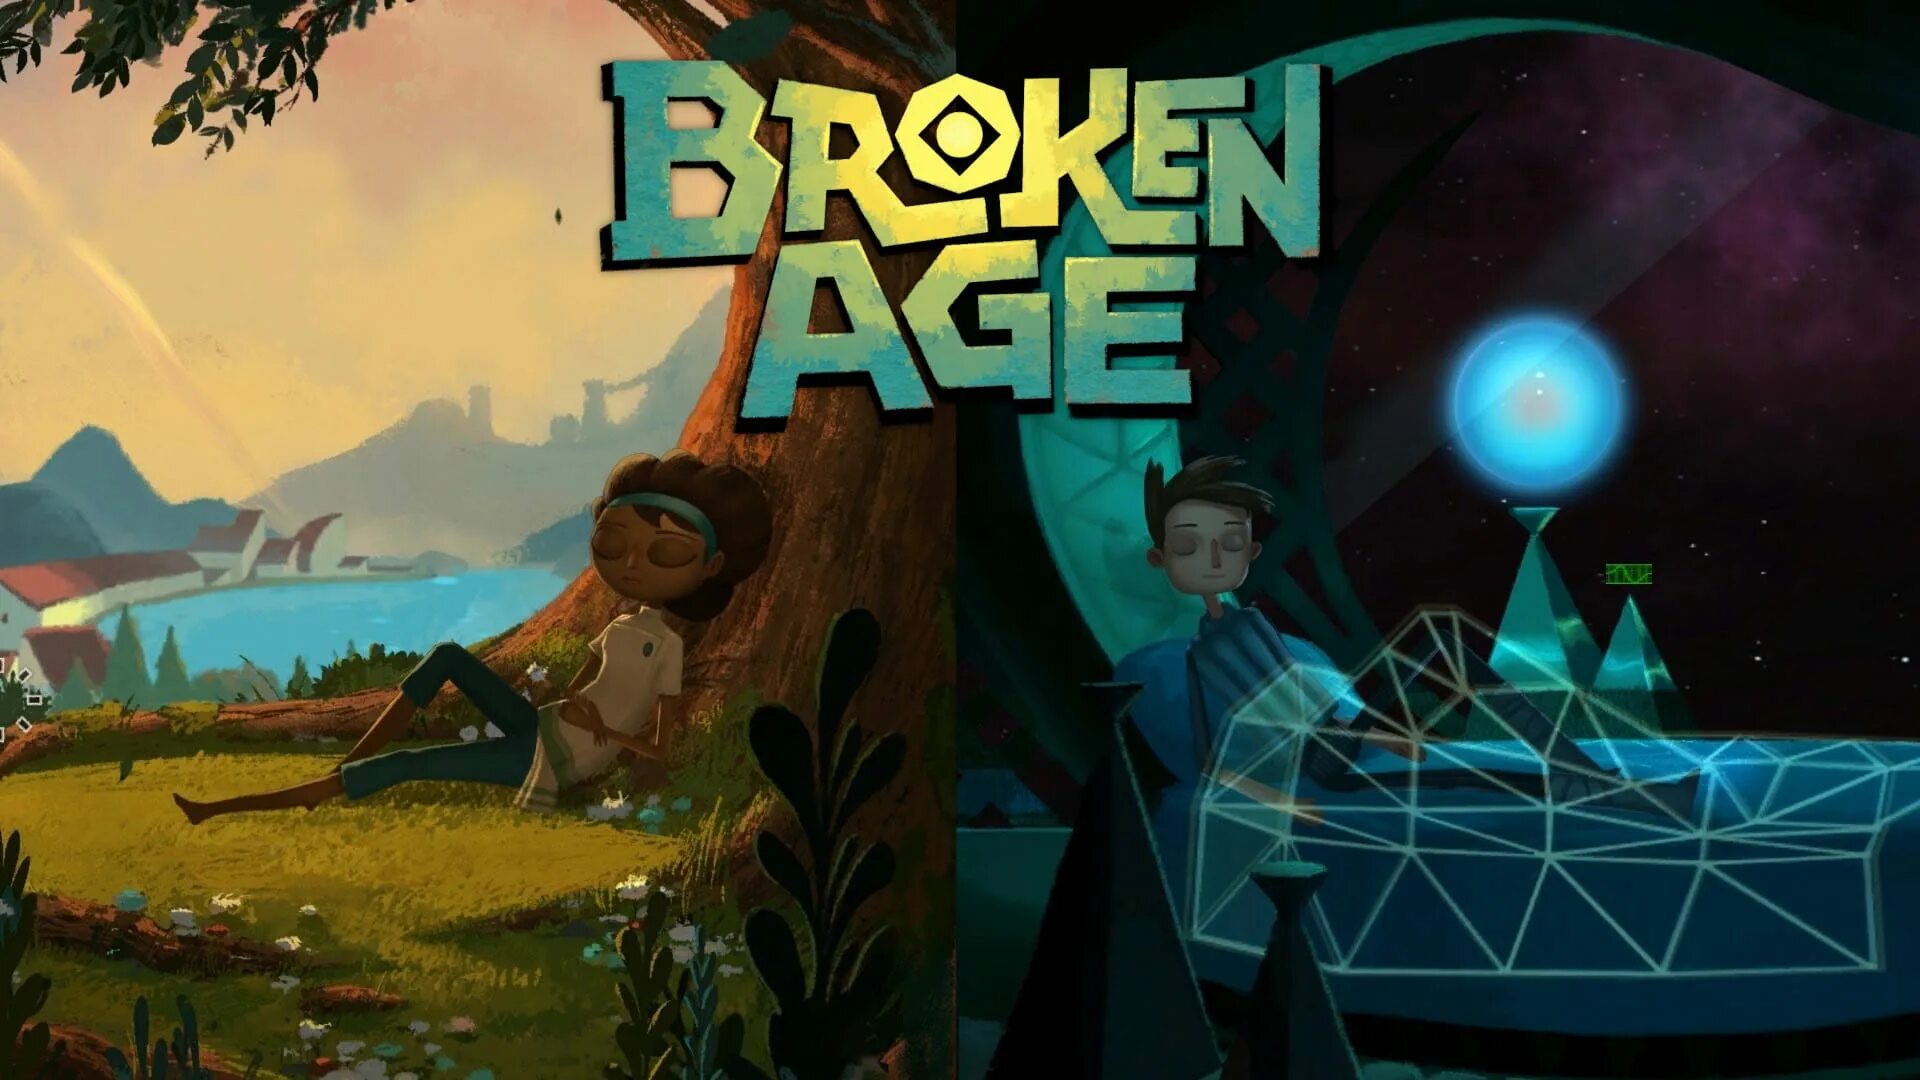 Broken games fzmz. Broken age: Act 2. Broken игра. Квест broken age. Broken age обложка.